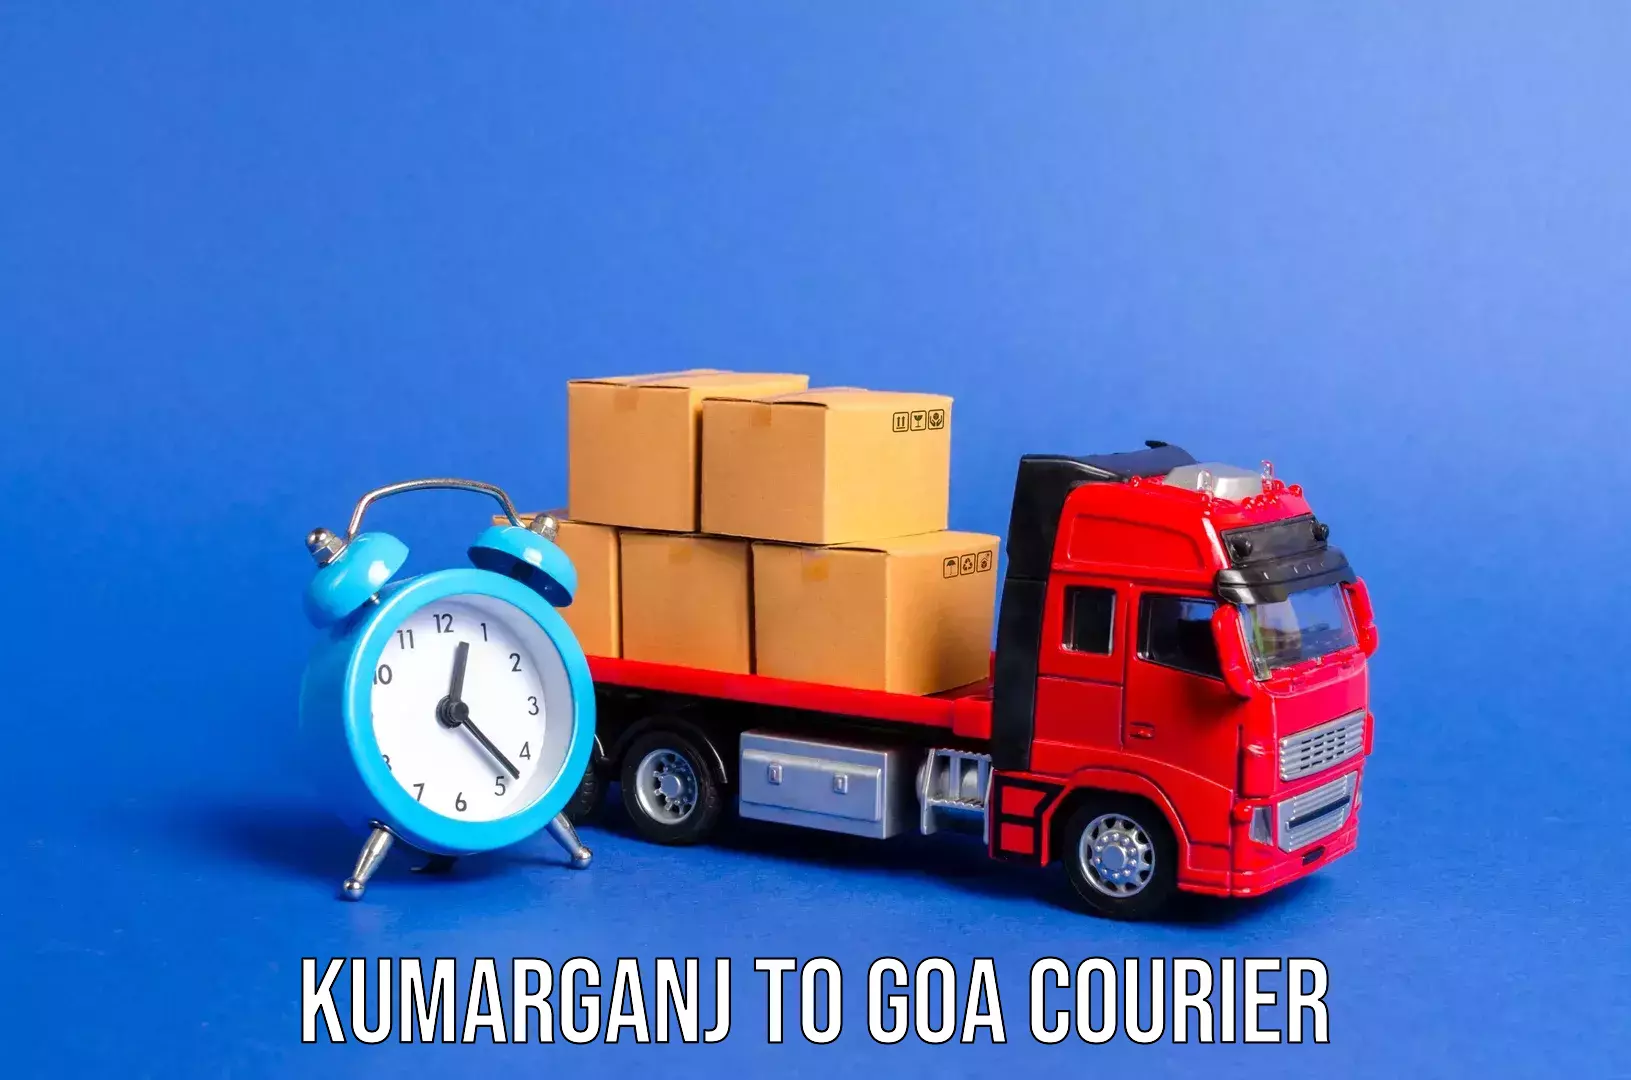 Luggage delivery system Kumarganj to Goa